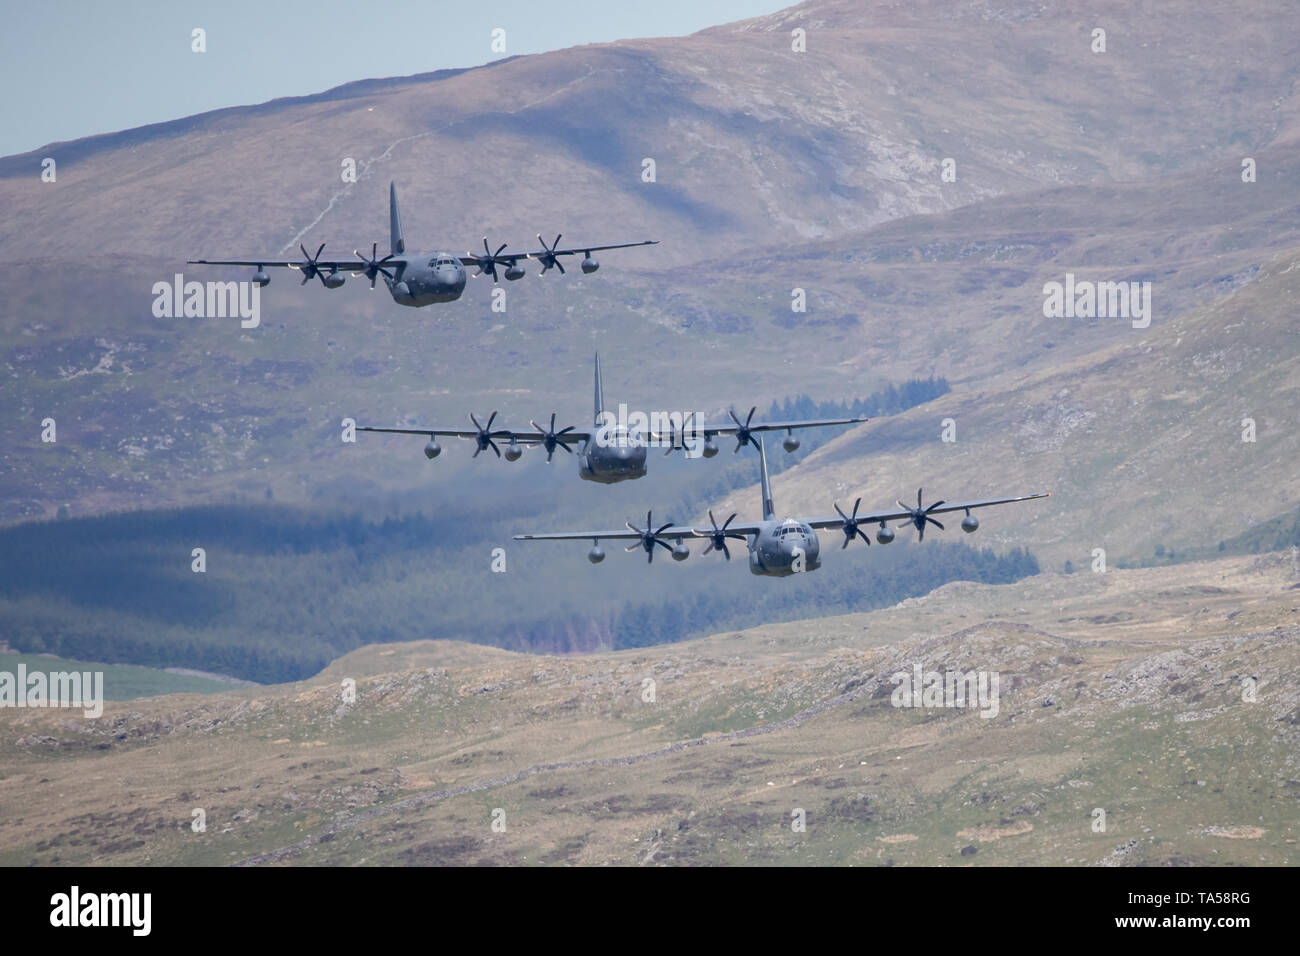 Un rare groupe de quatre avions Hercules C-130 de l'USAF voler à basse altitude dans la zone 7, boucle Mach près de Dolgellau, Pays de Galles, Royaume-Uni. Banque D'Images